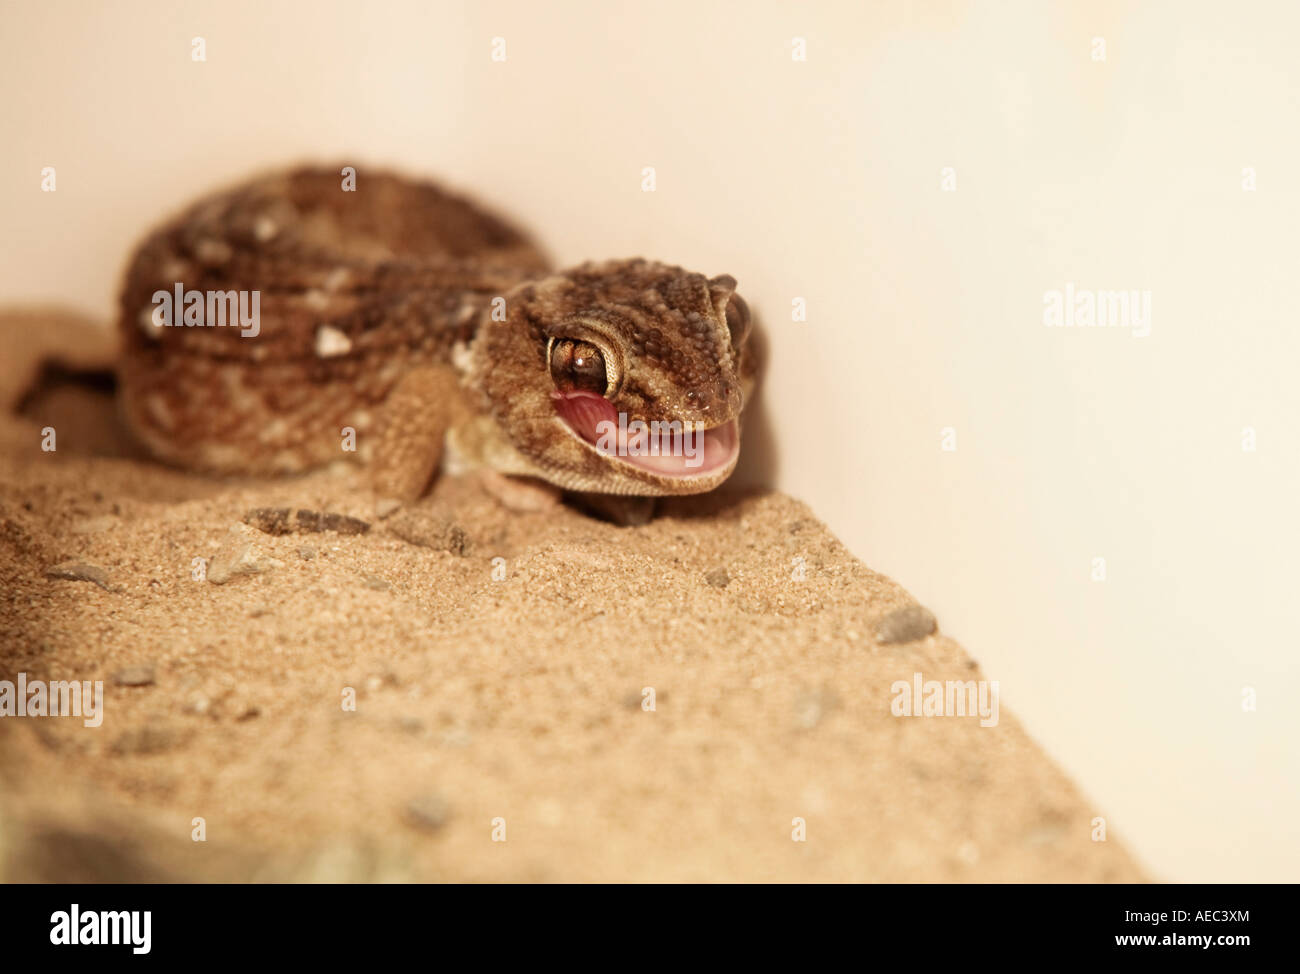 Gecko (Chondrodactylus angulifer), jeune géante de son œil avec une longue langue Banque D'Images